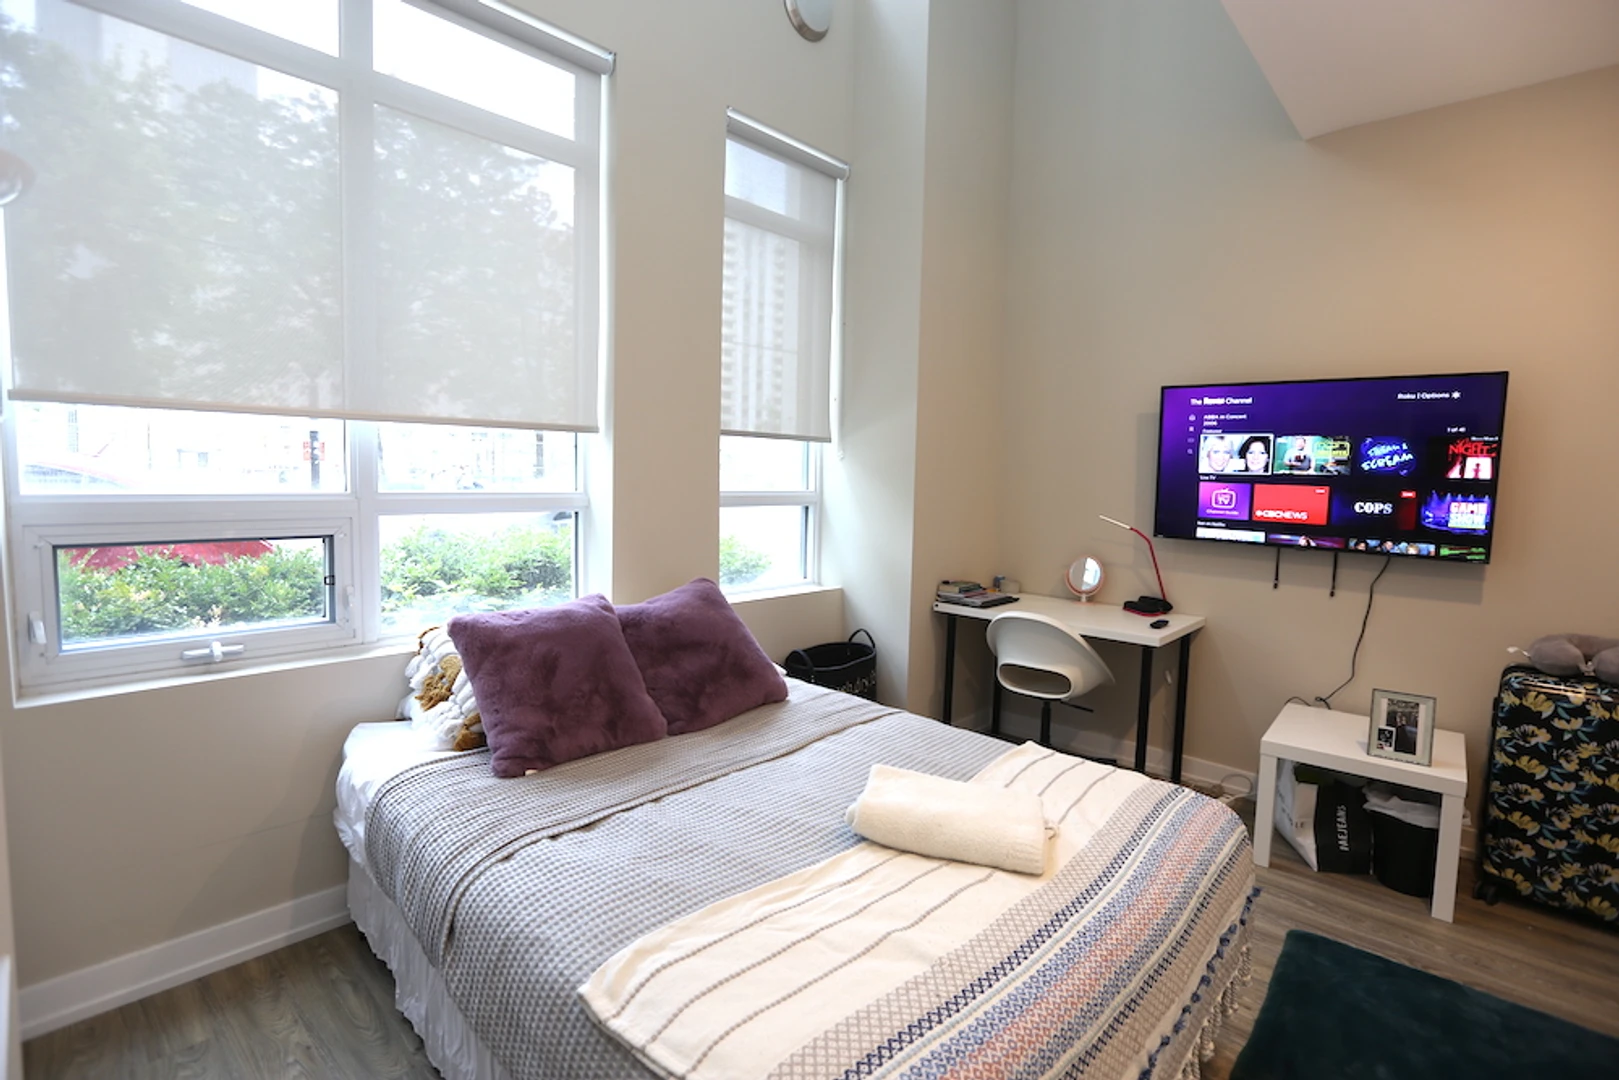 Chambre à louer avec lit double Toronto